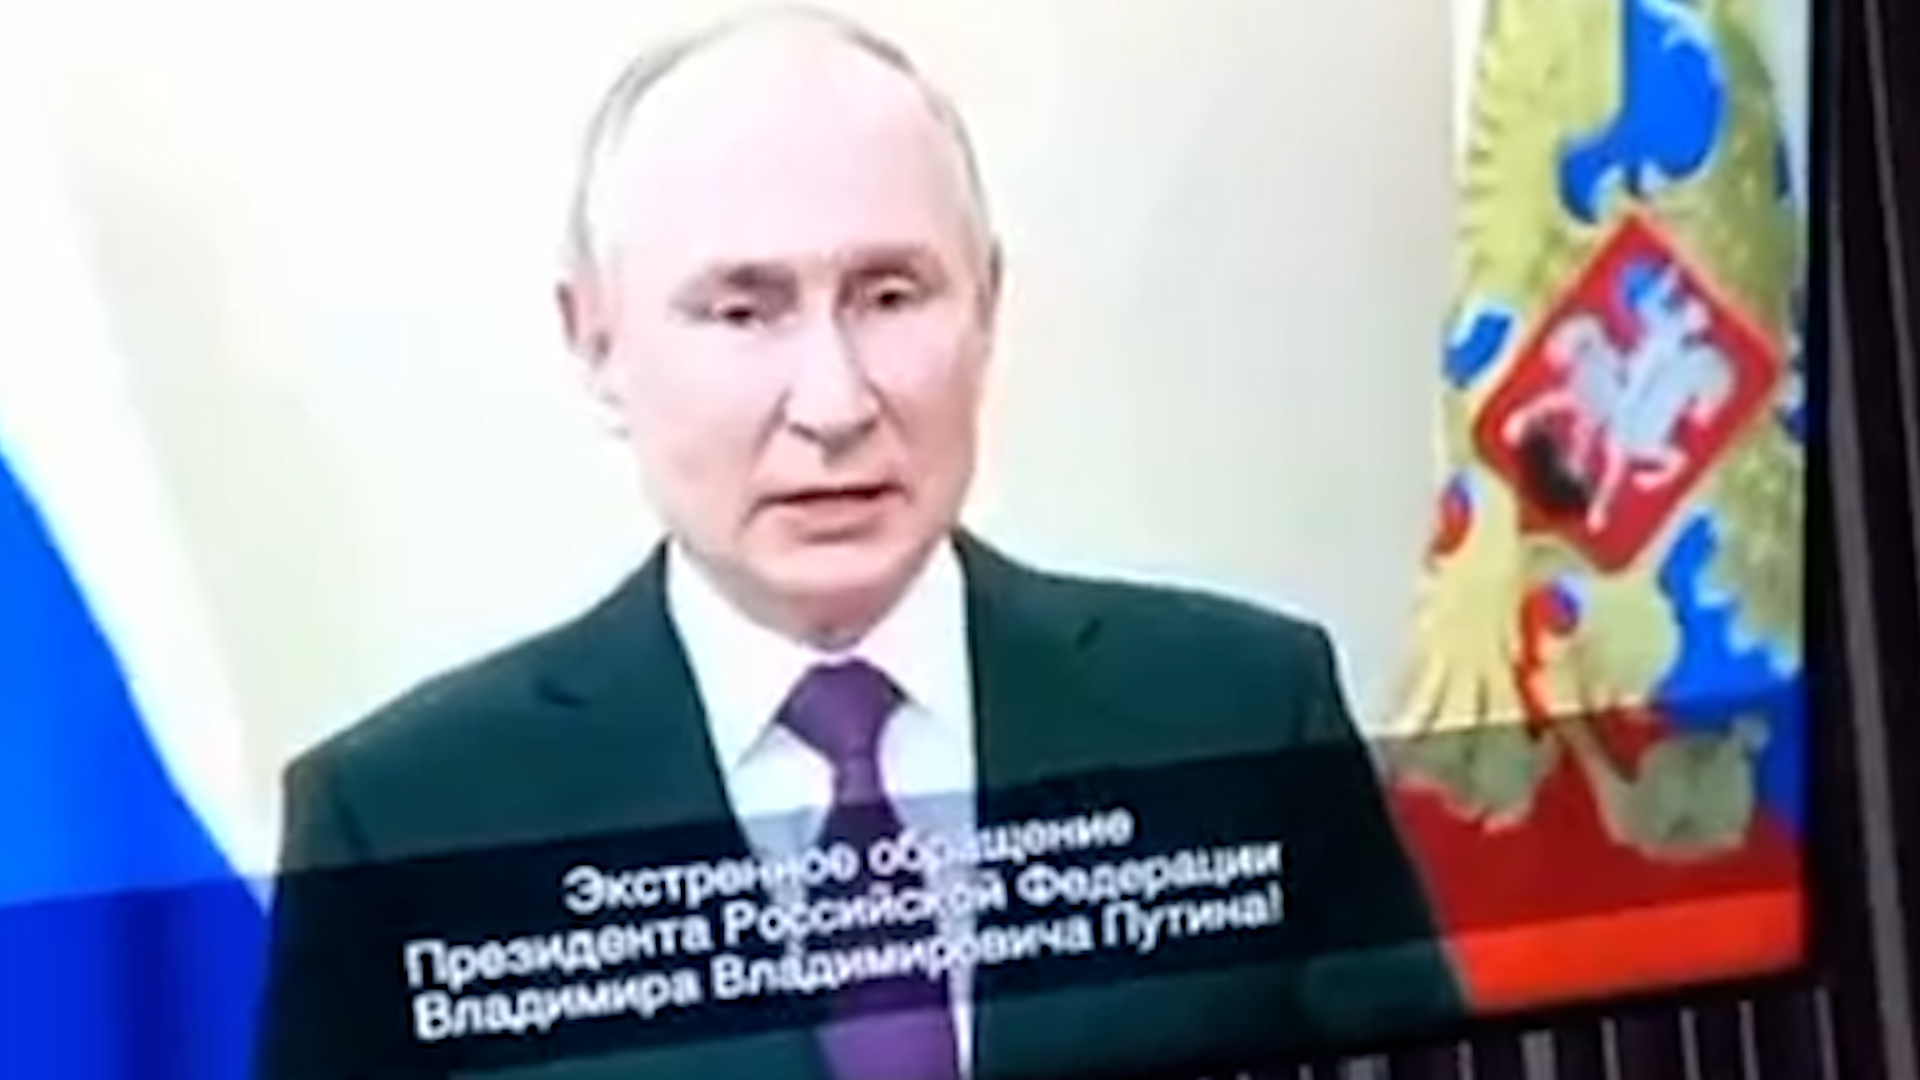 Tras un hackeo, varias cadenas de TV rusas difundieron un ‘deepfake’ de Putin